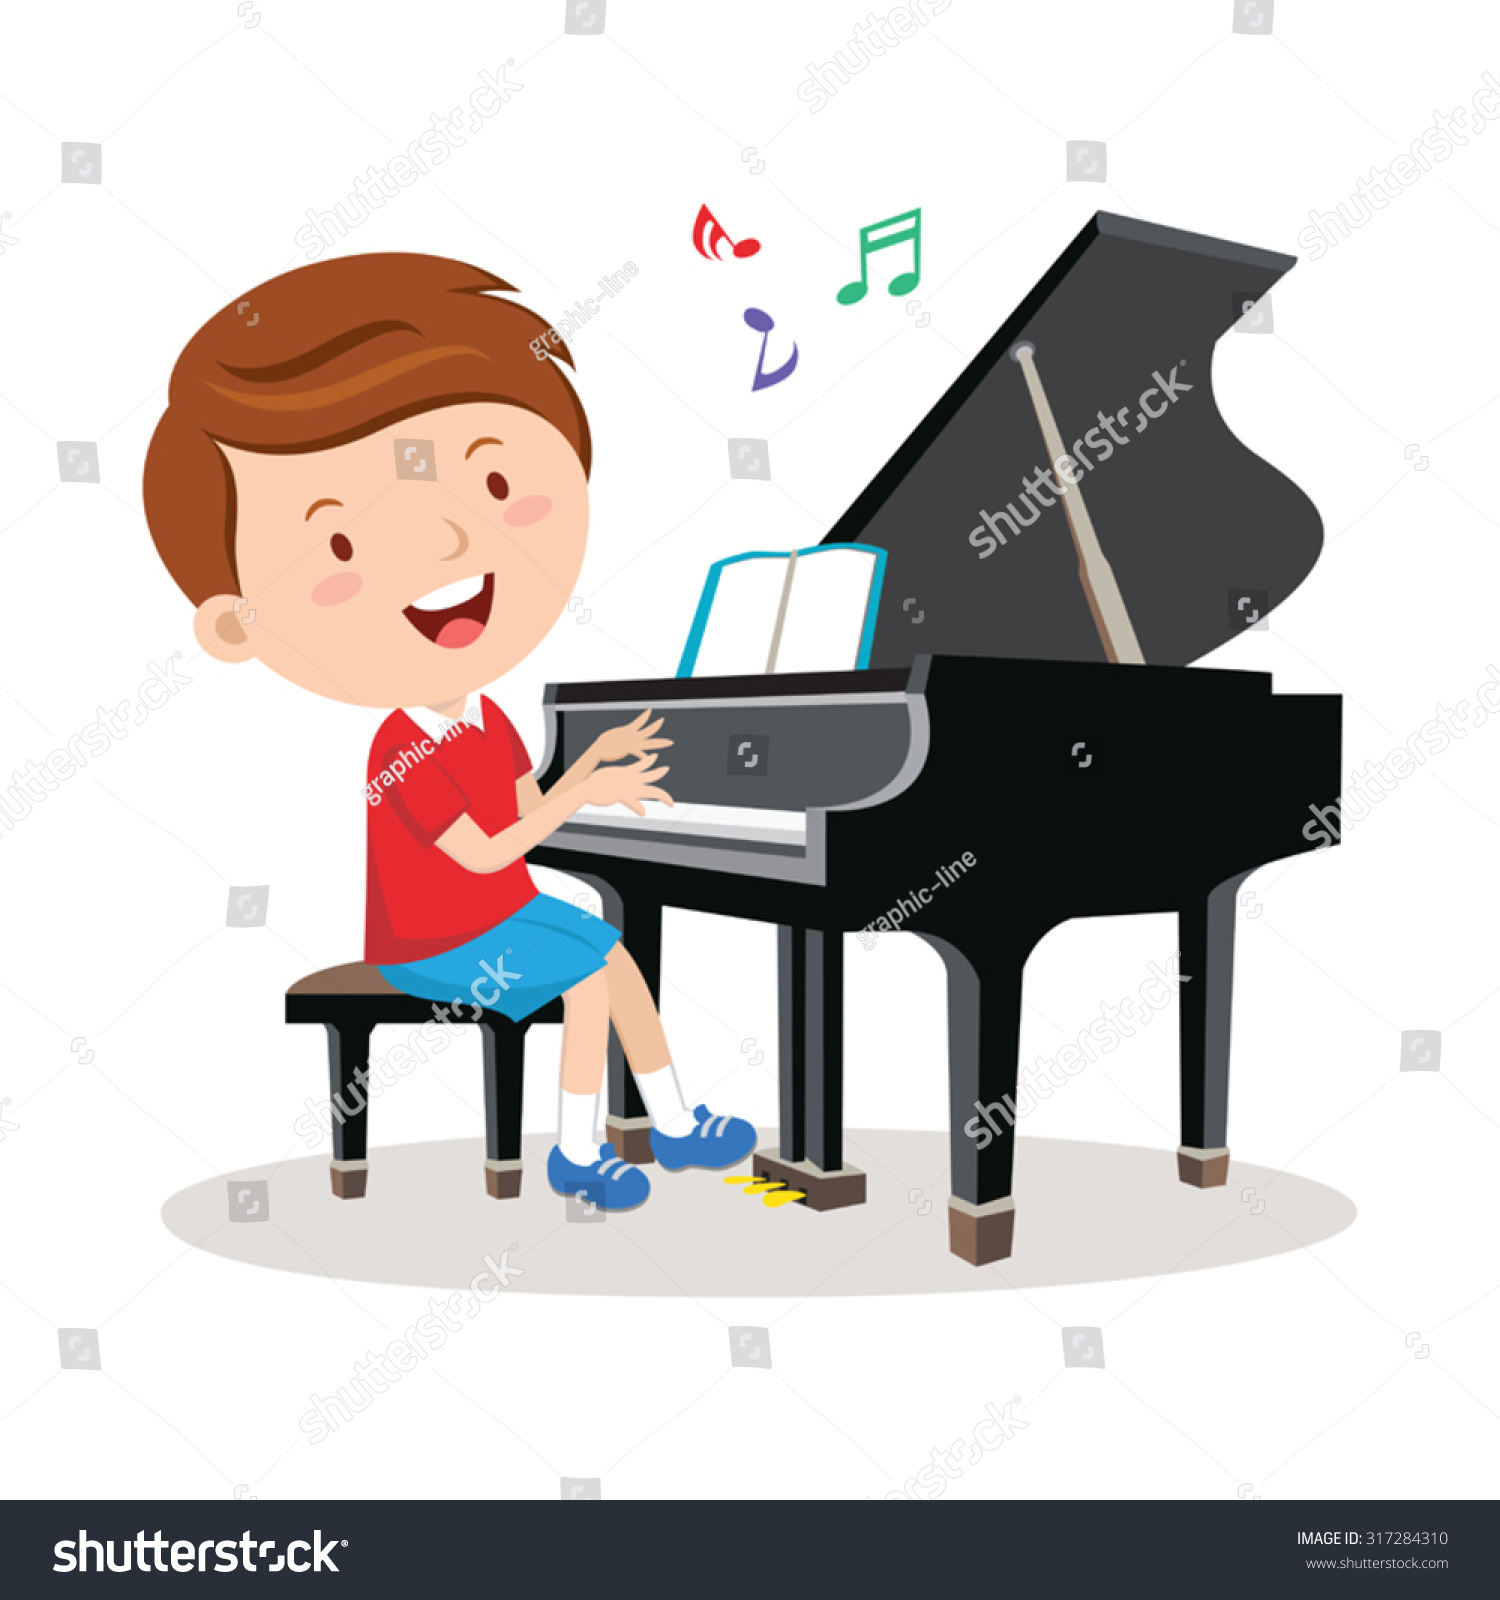 ピアノを弾く少年 ピアノを弾く明るい少年のベクターイラスト のベクター画像素材 ロイヤリティフリー